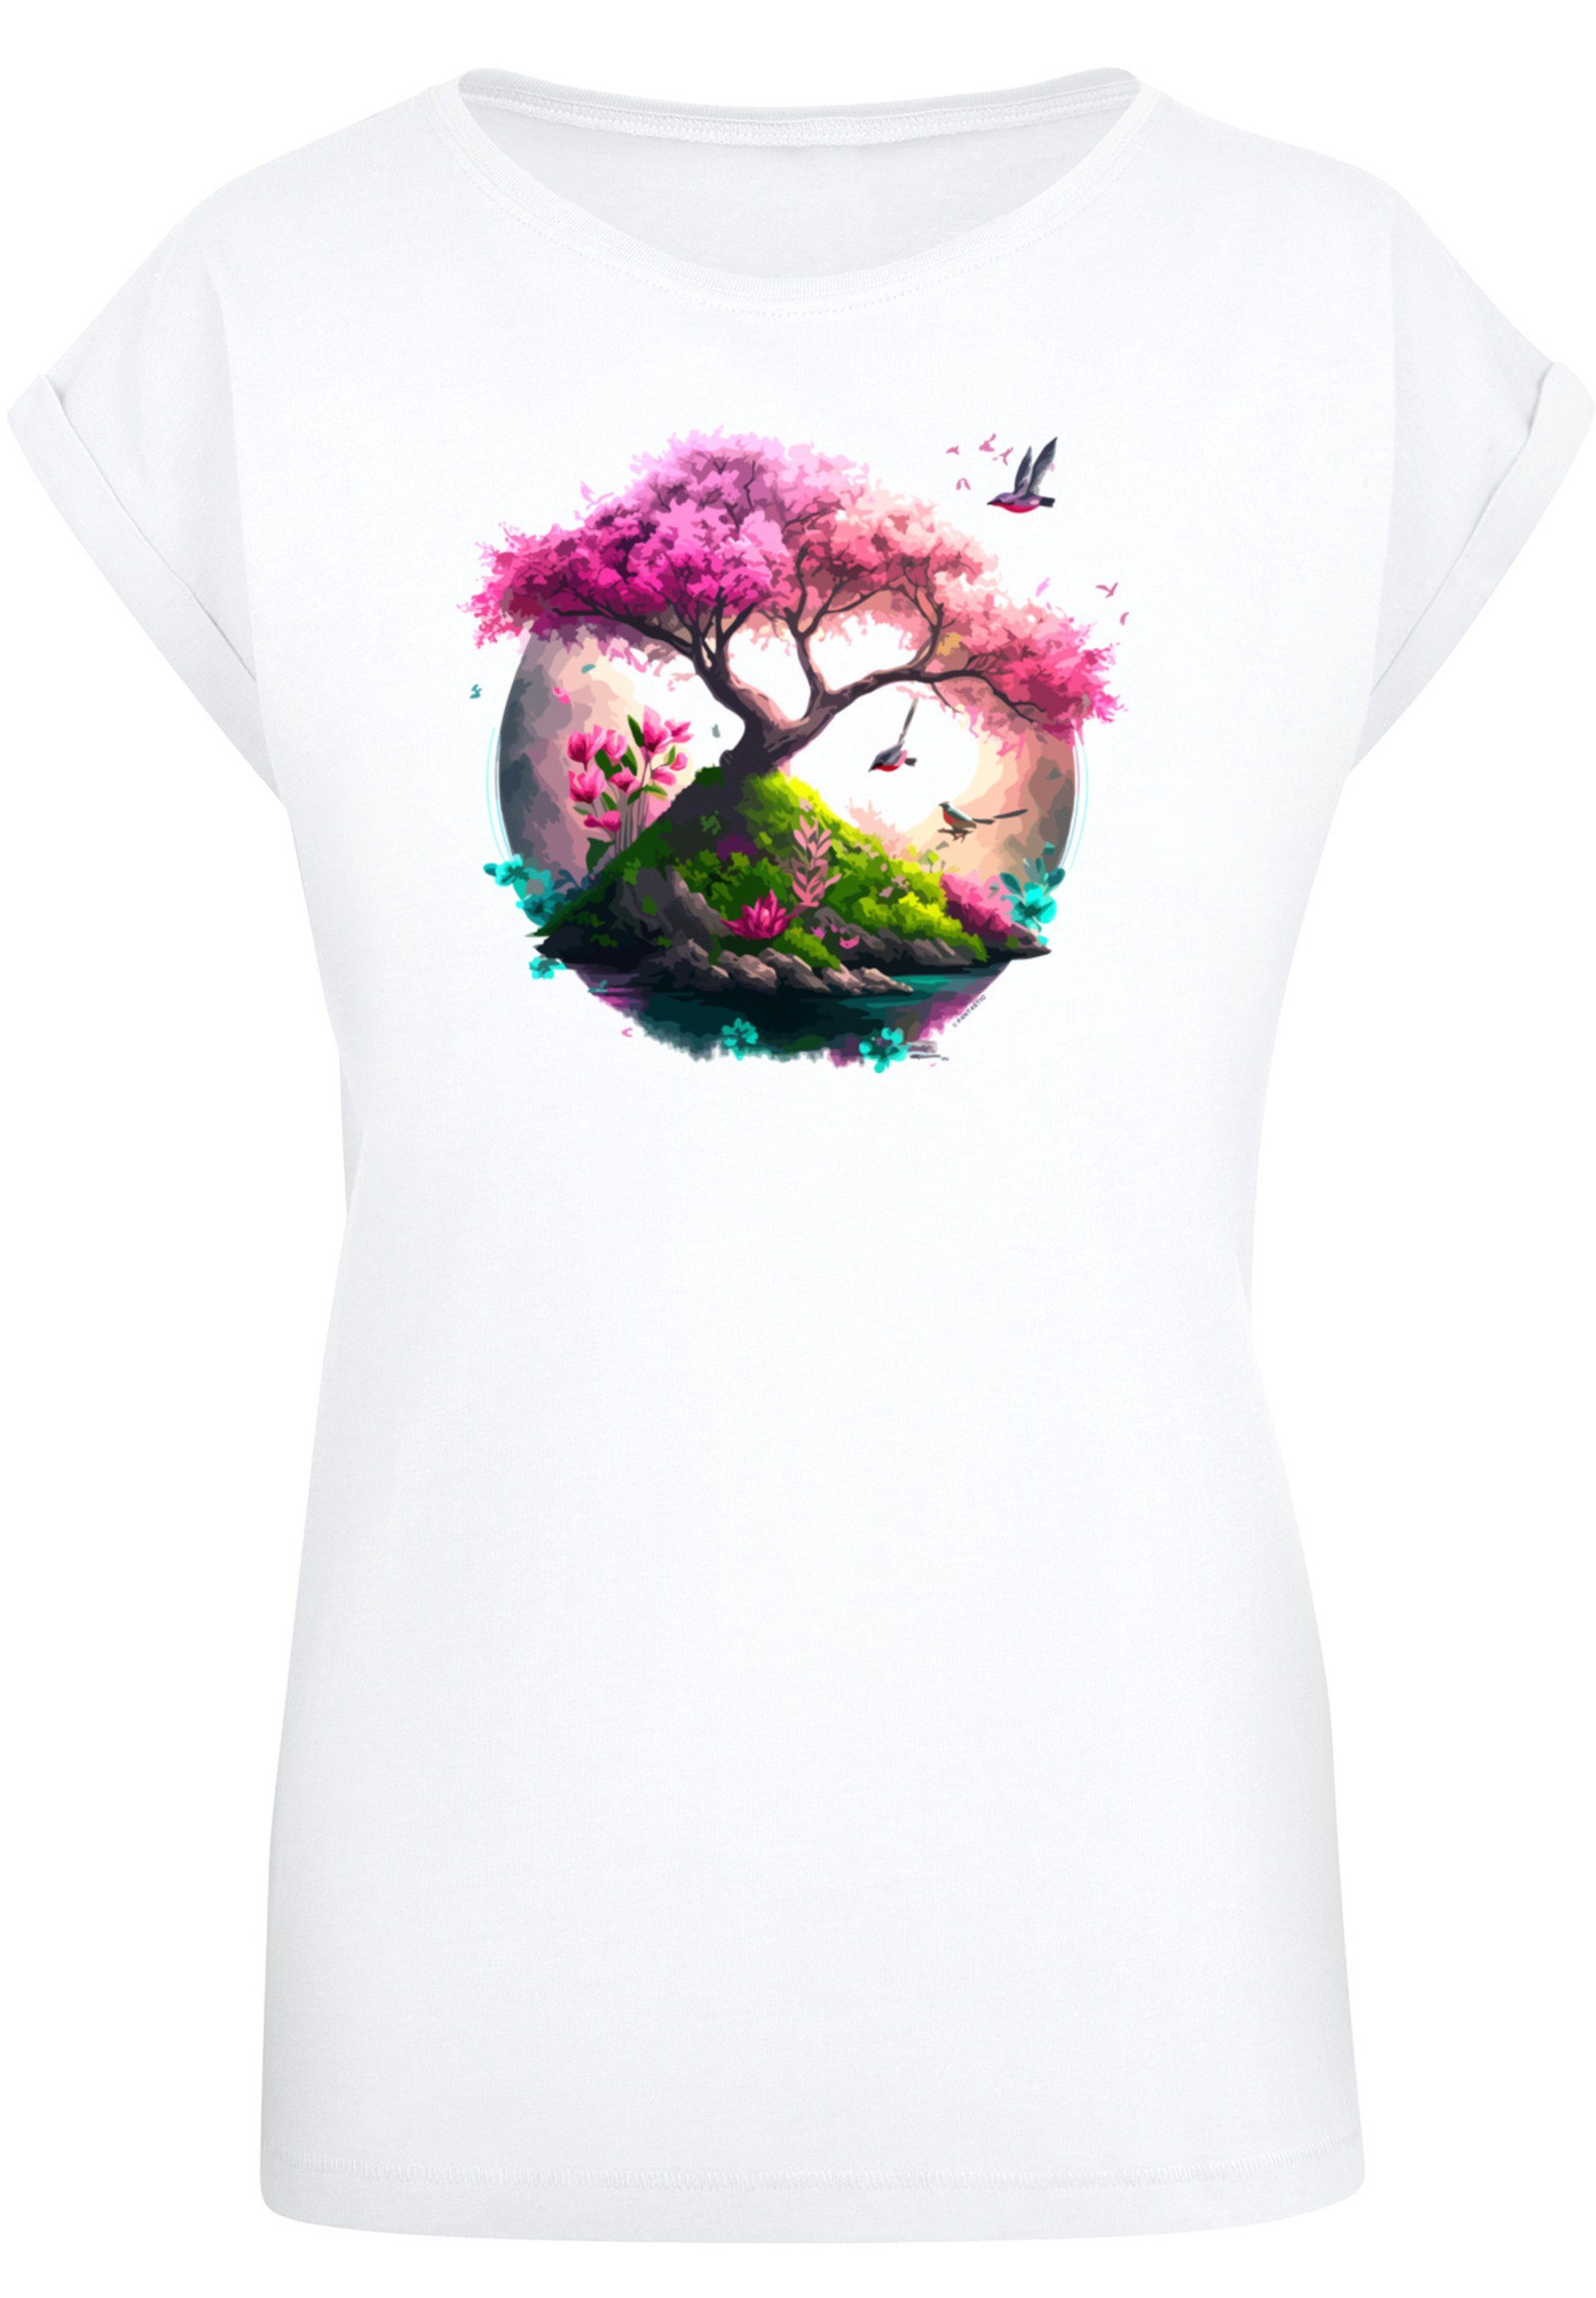 170 T-Shirt Baum F4NT4STIC cm trägt ist Das groß Größe und M Model Kirschblüten Print,